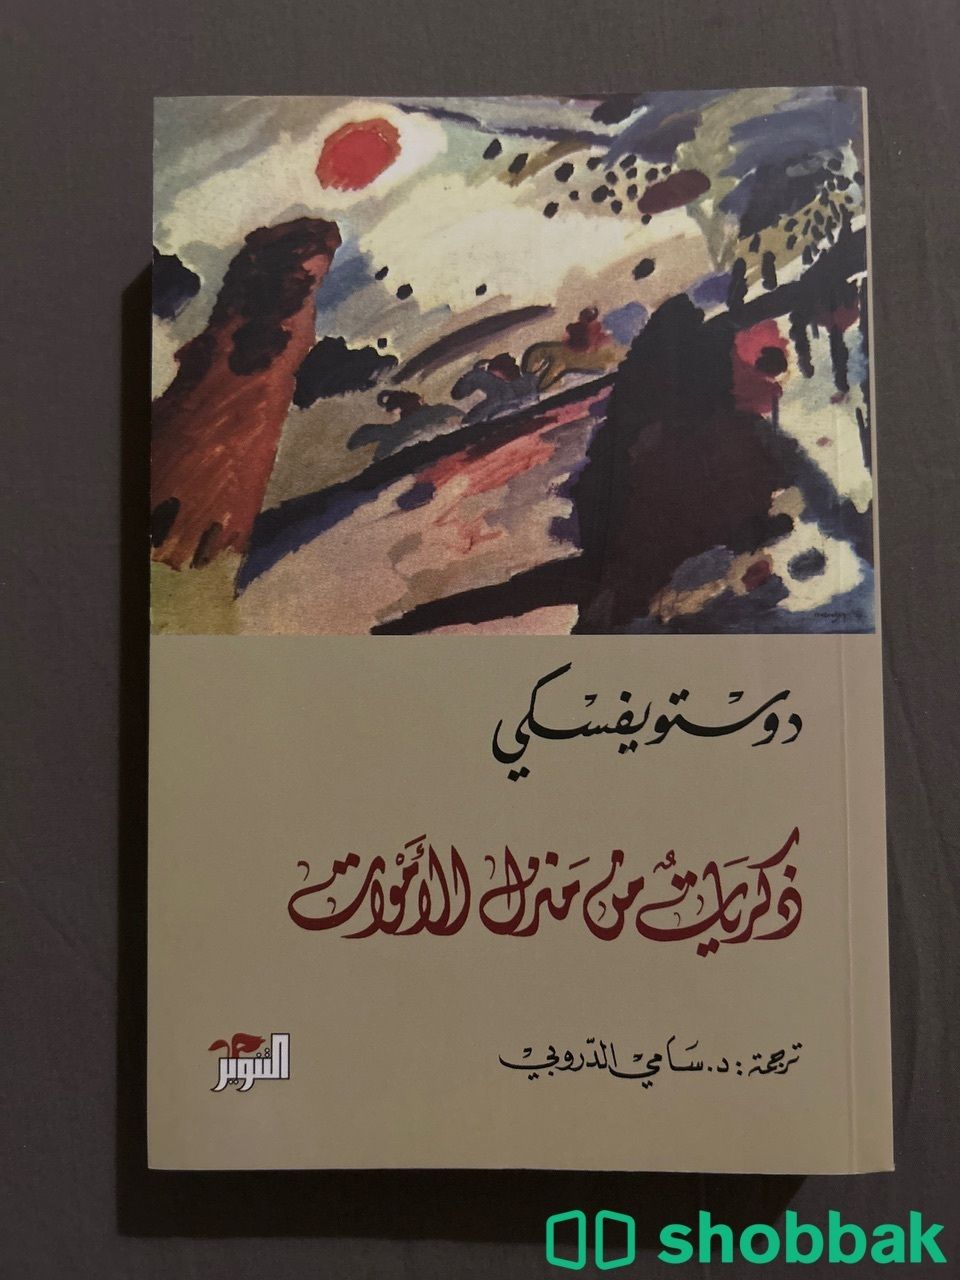 كتاب ذكريات من منزل الأموات لدوستويفسكي Shobbak Saudi Arabia